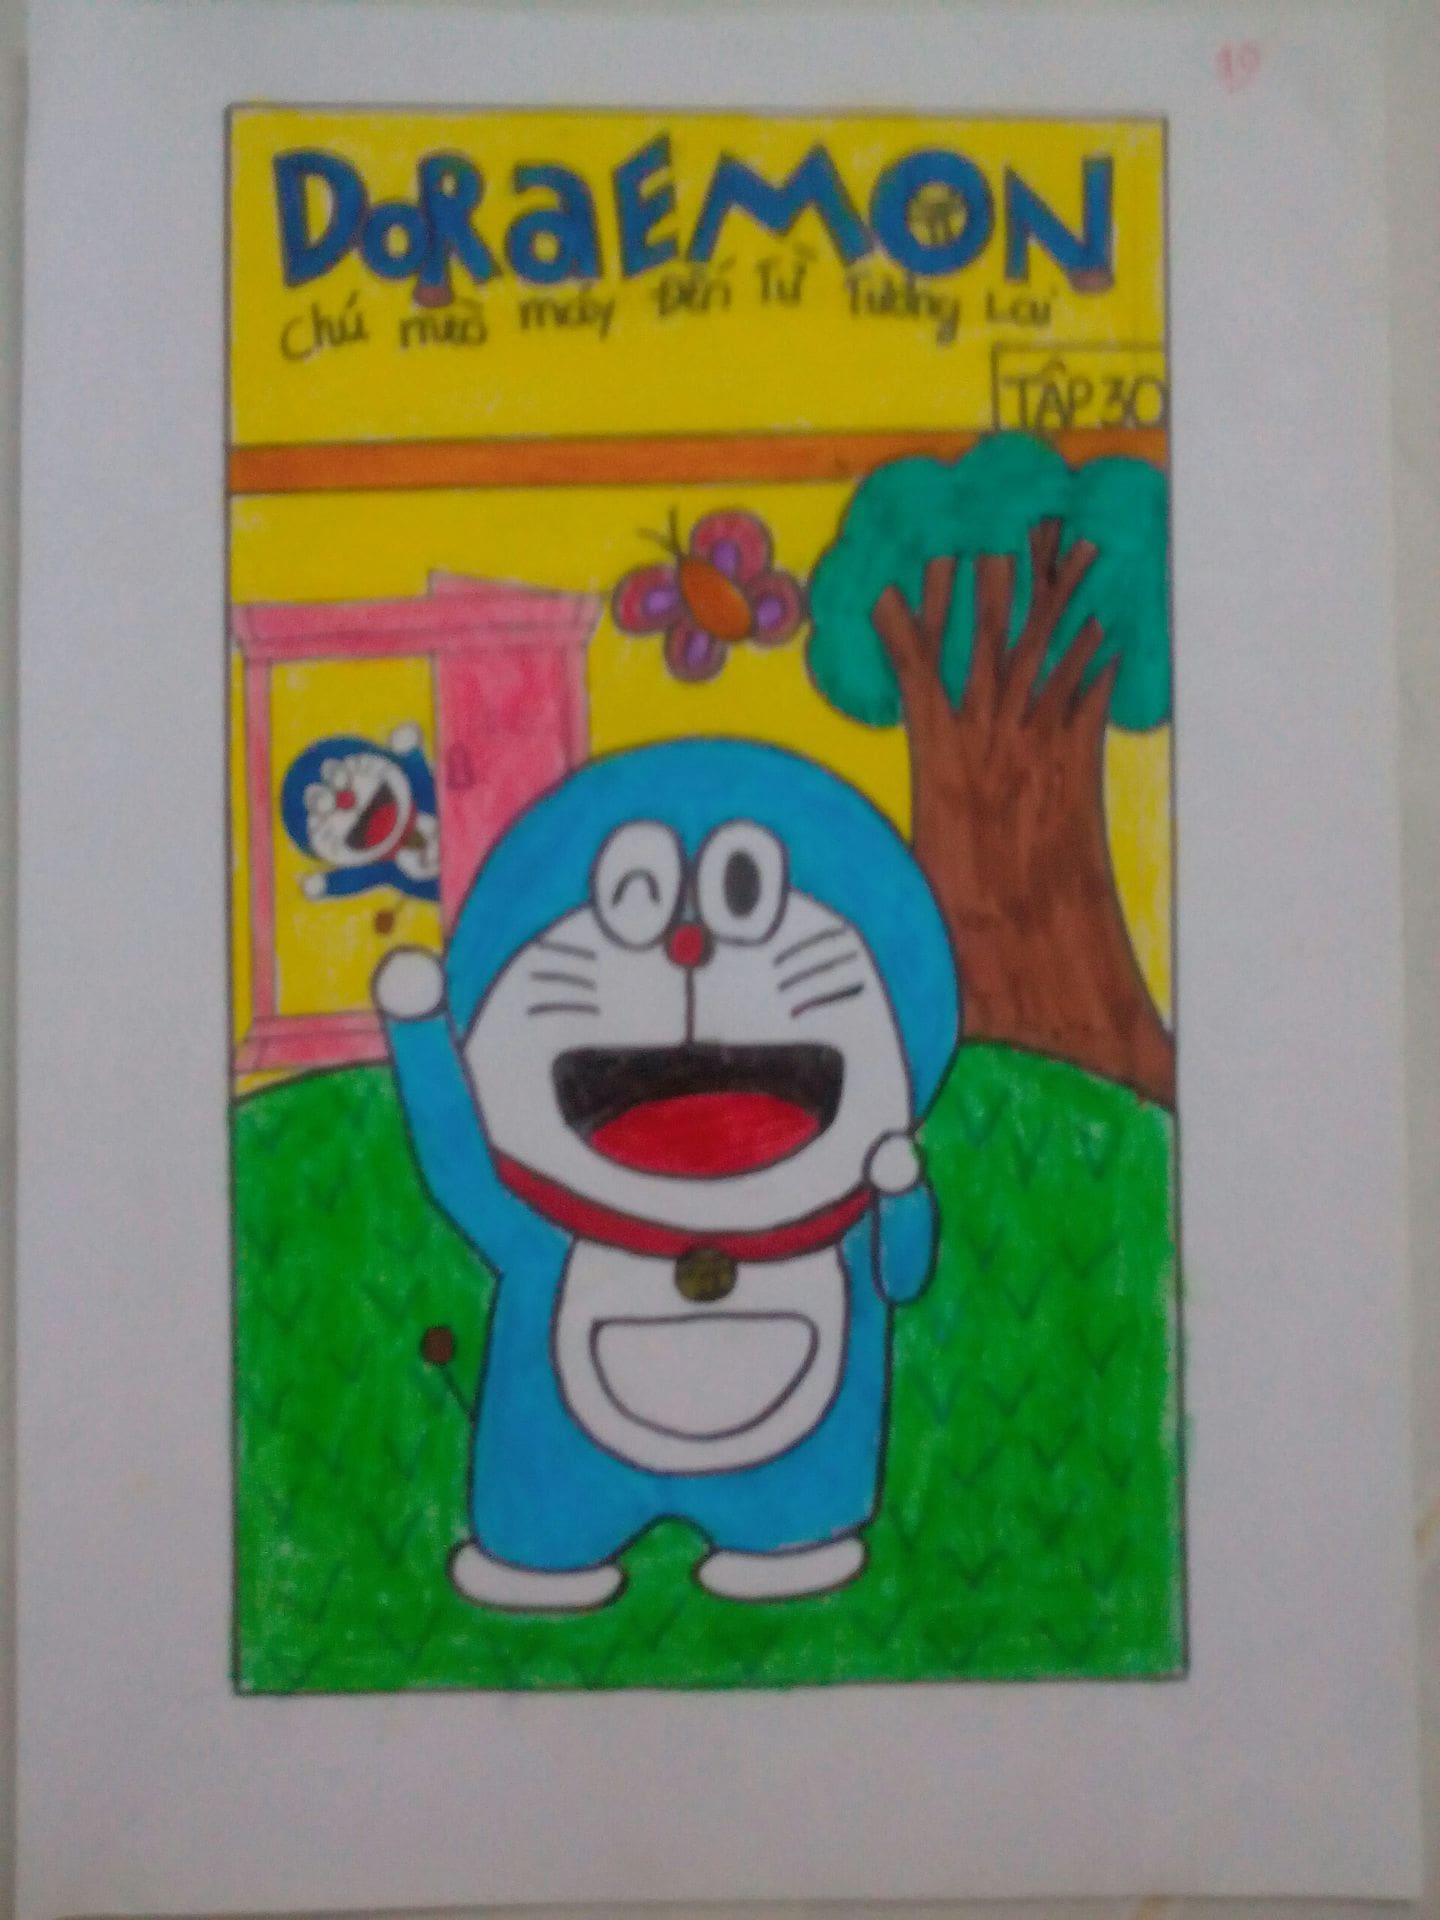 Vẽ bìa truyện Doraemon: Bạn có biết Doraemon đã có mặt từ năm 1969 và trở thành biểu tượng Manga của Nhật Bản? Bạn có muốn tìm hiểu thêm về quá trình tạo nên hình ảnh Doraemon? Bìa truyện Doraemon sẽ mang đến cho bạn một cái nhìn chi tiết về quá trình vẽ và tạo hình nhân vật yêu thích của mình.